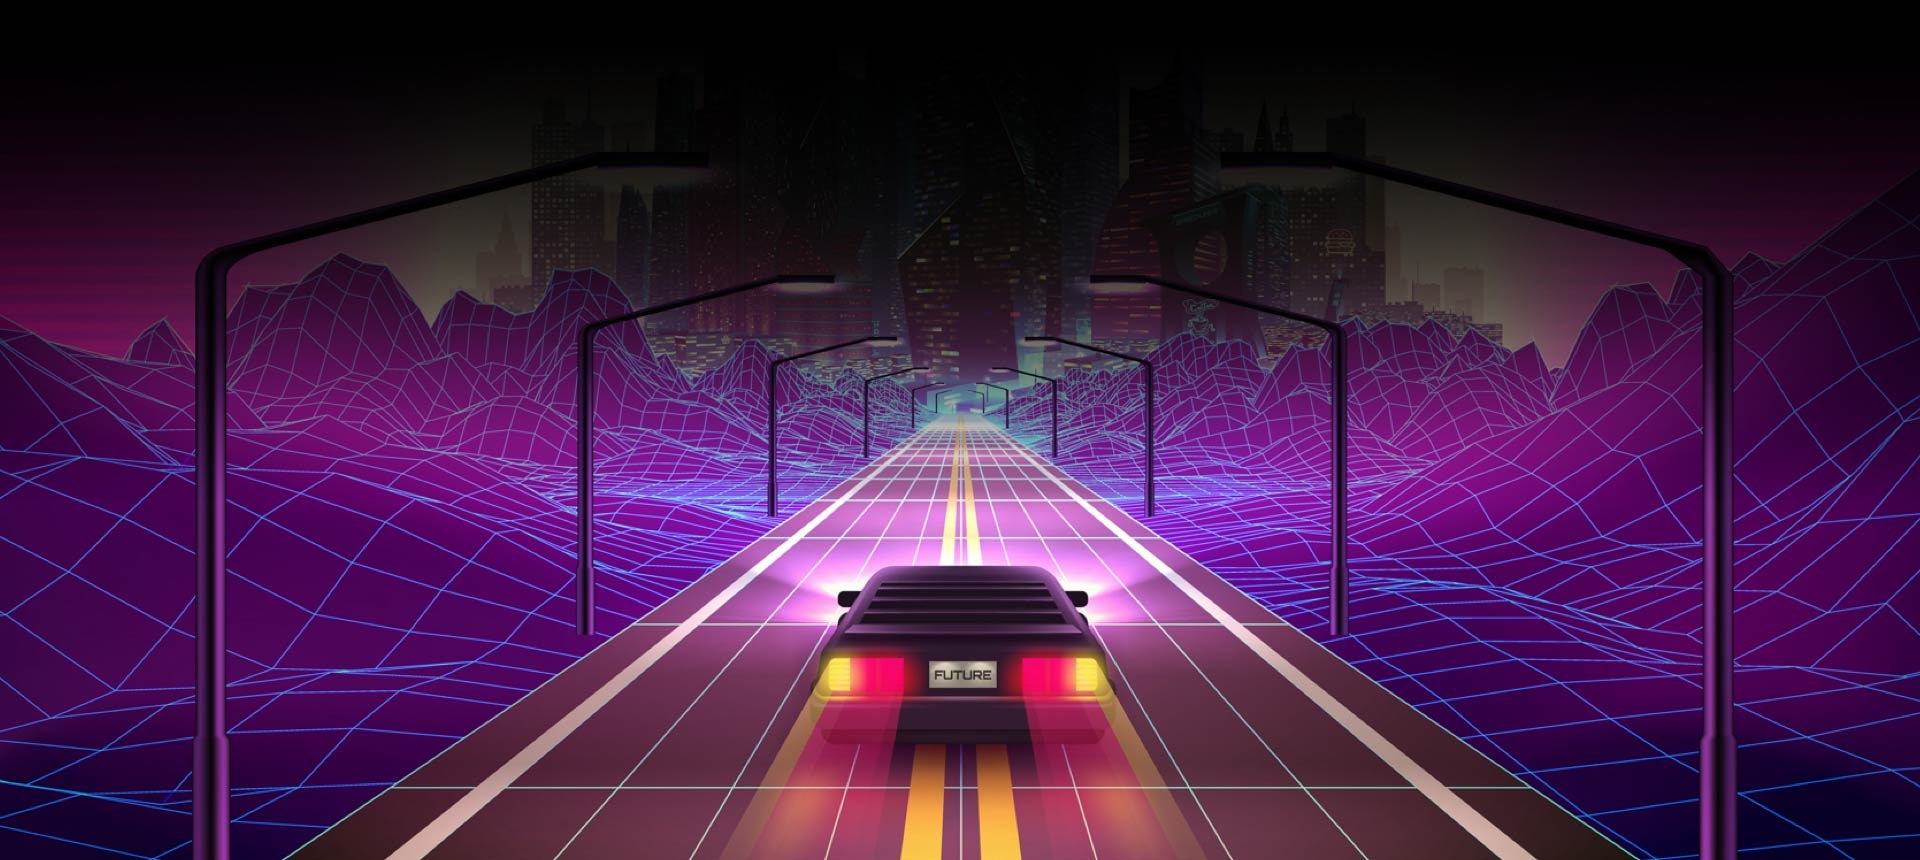 Изображение гоночного автомобиля в игре, на номерном знаке написано FUTURE.